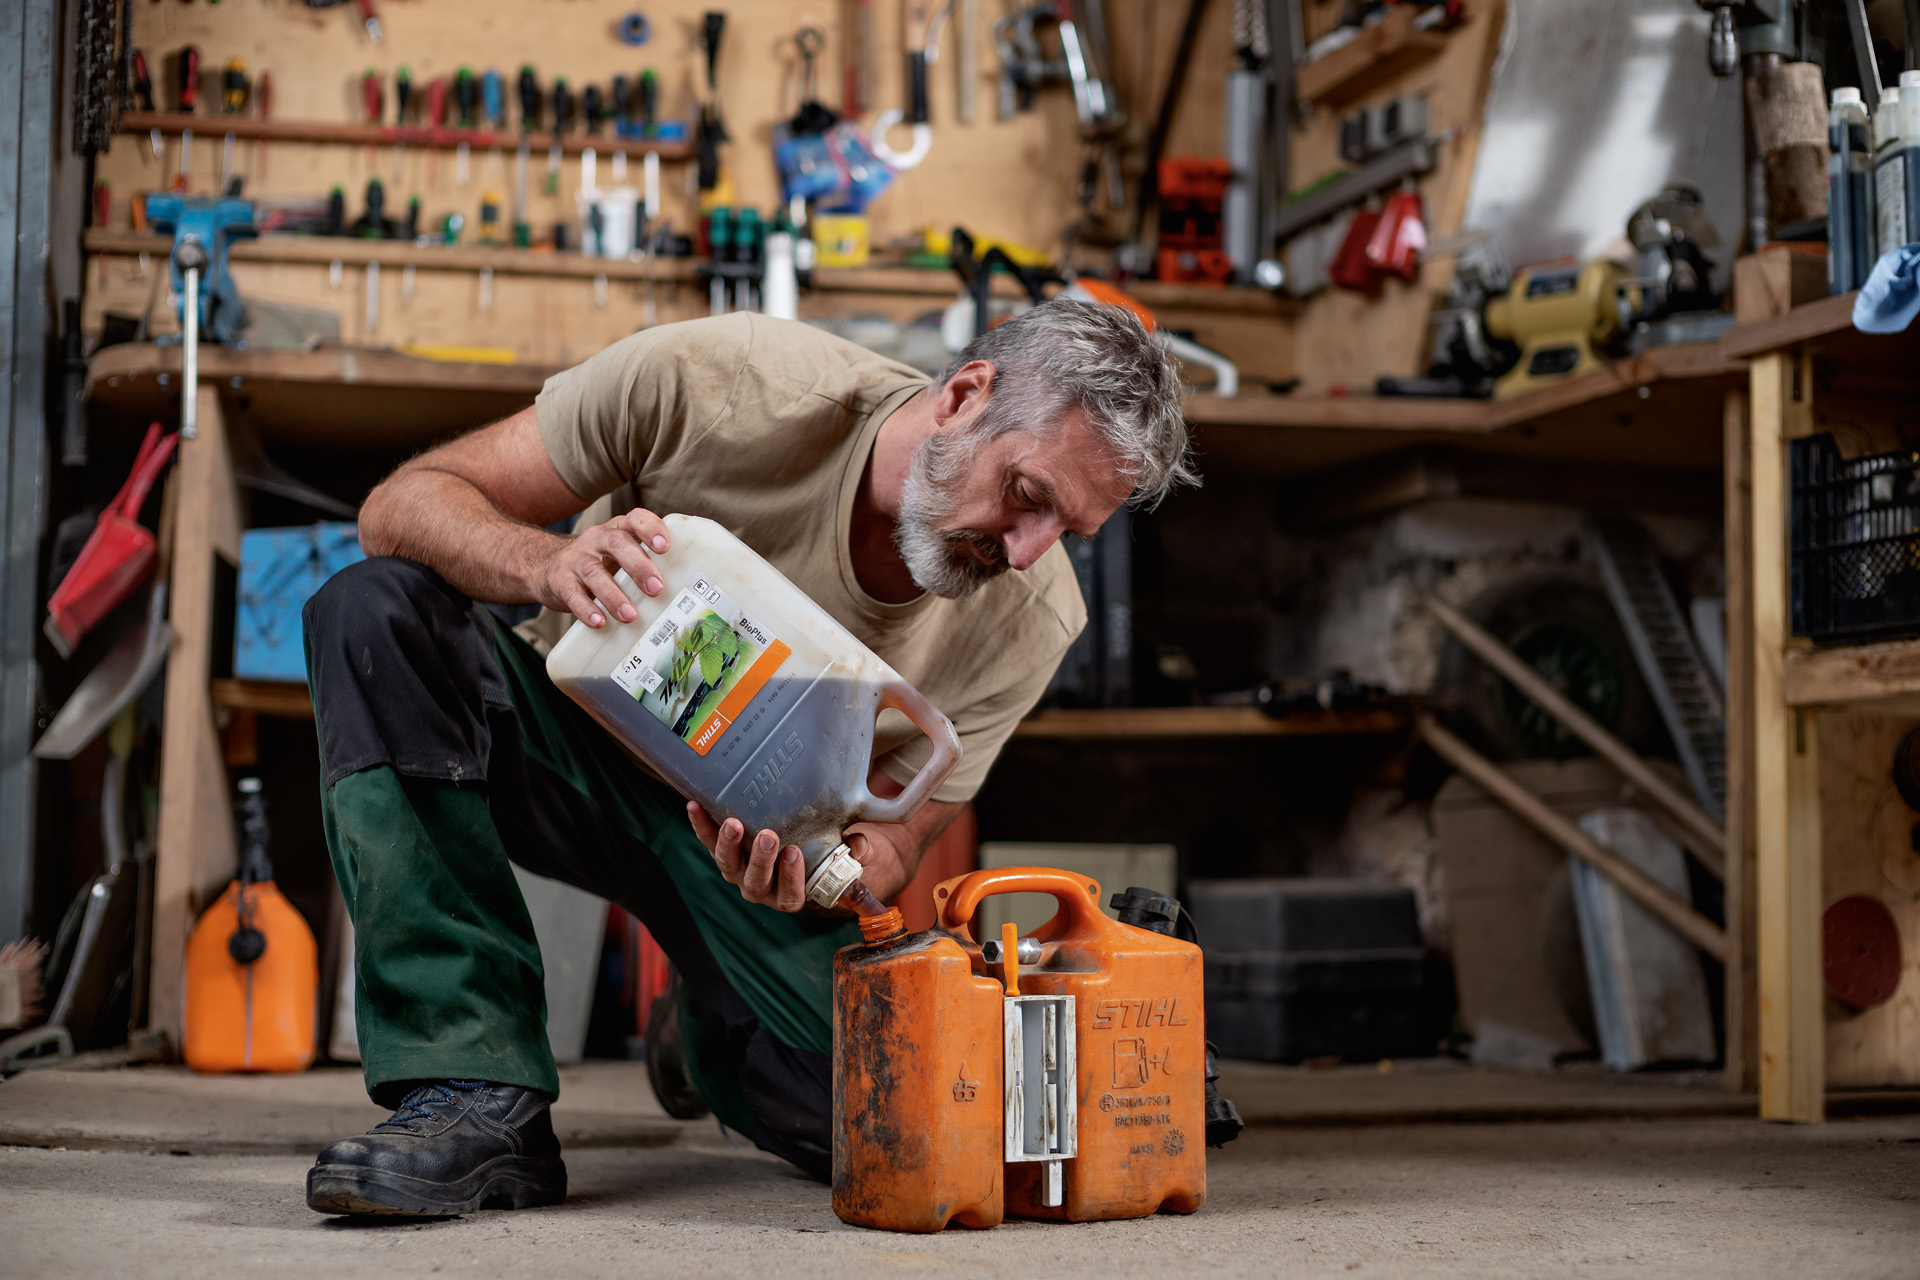 Mann kniet auf Werkstattboden und füllt STIHL Kraftstoff in einen orangenen Kanister